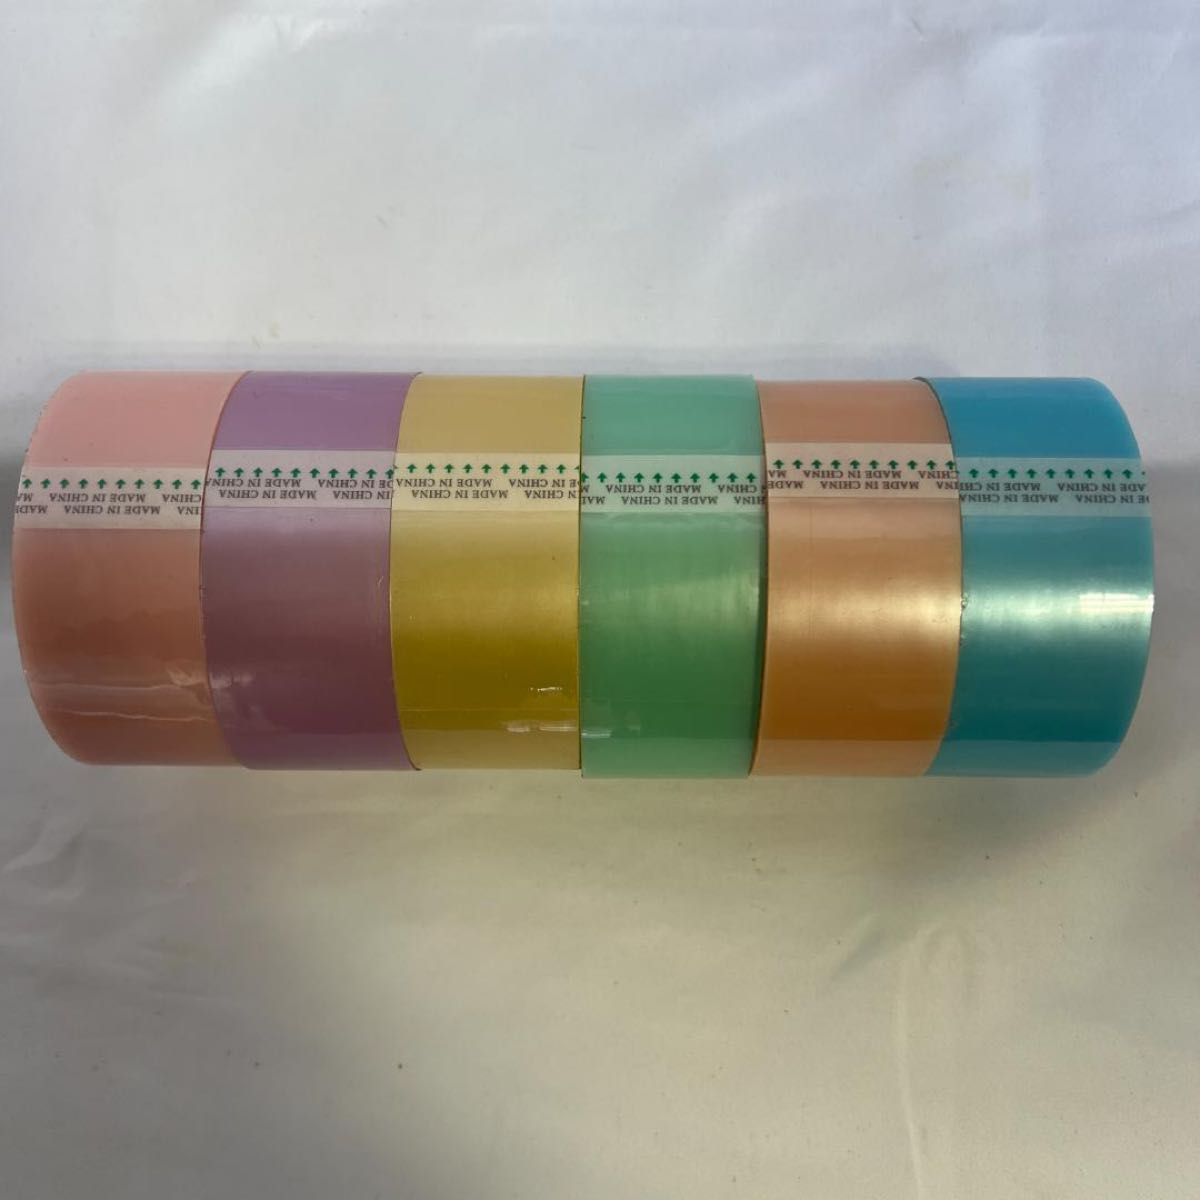 テープボール 専用テープ 6色セット 3.6cm パステルカラー YouTube